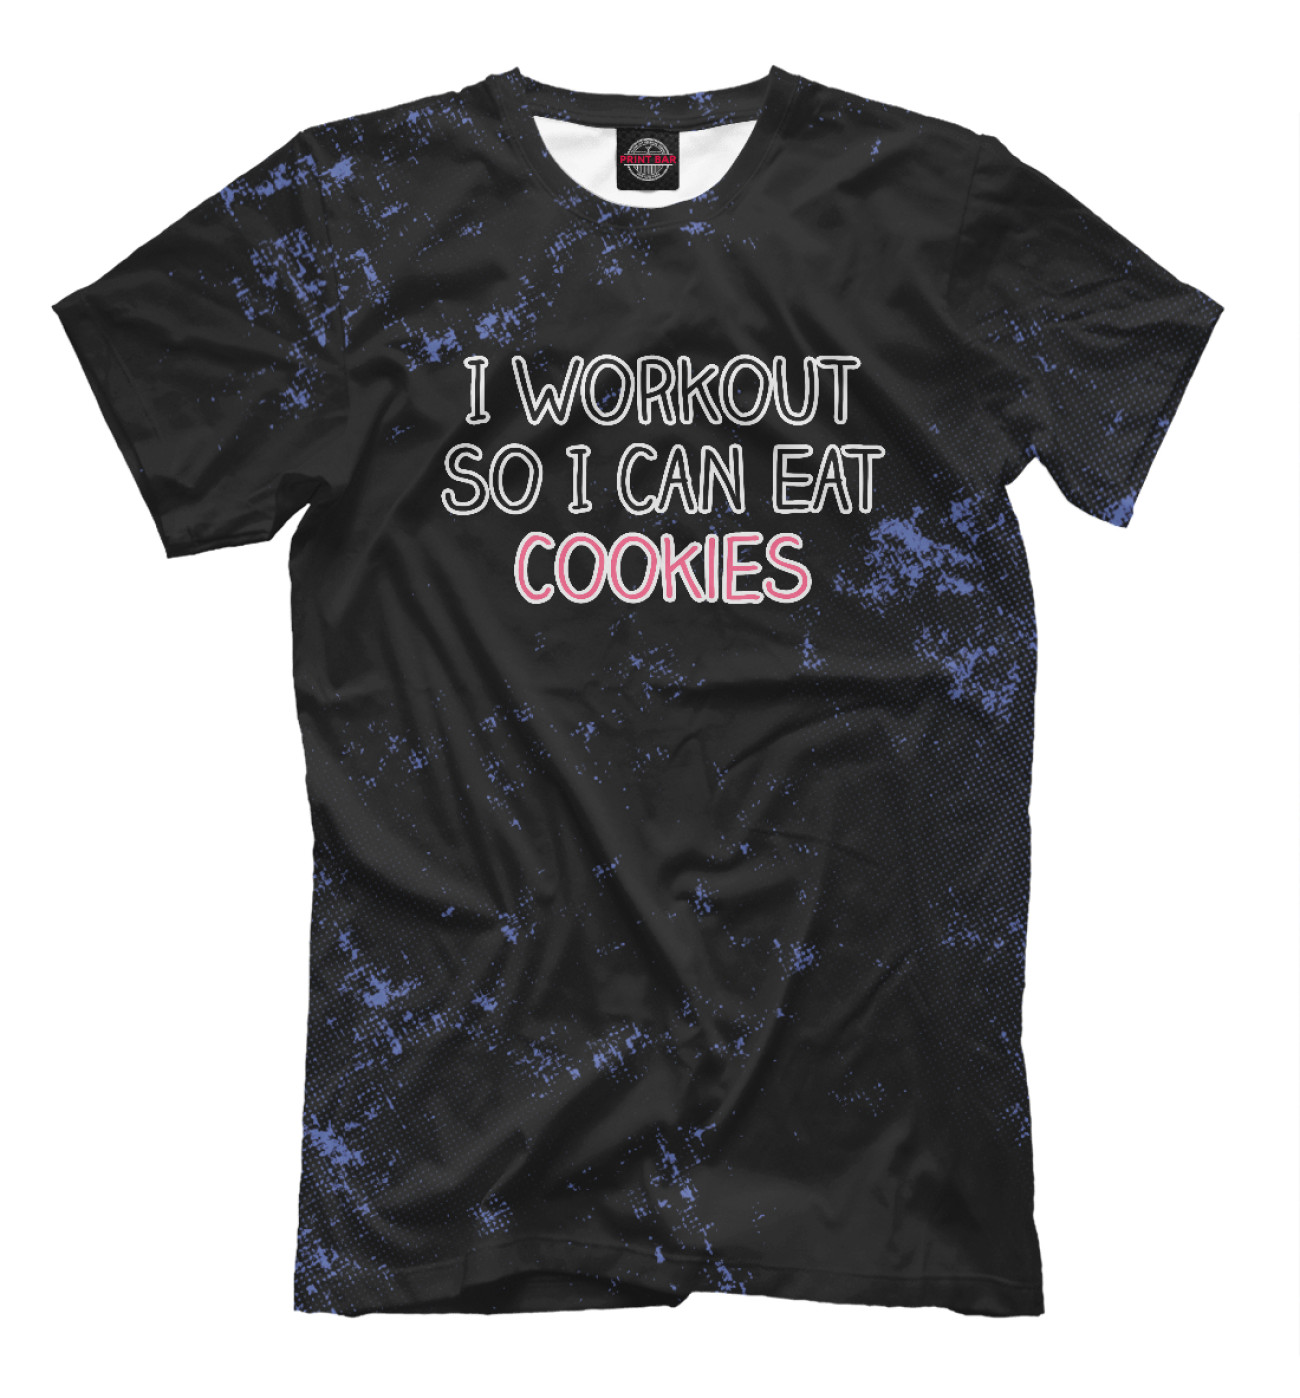 Мужская Футболка I Workout So I Can Eat Cook, артикул: WKO-360767-fut-2